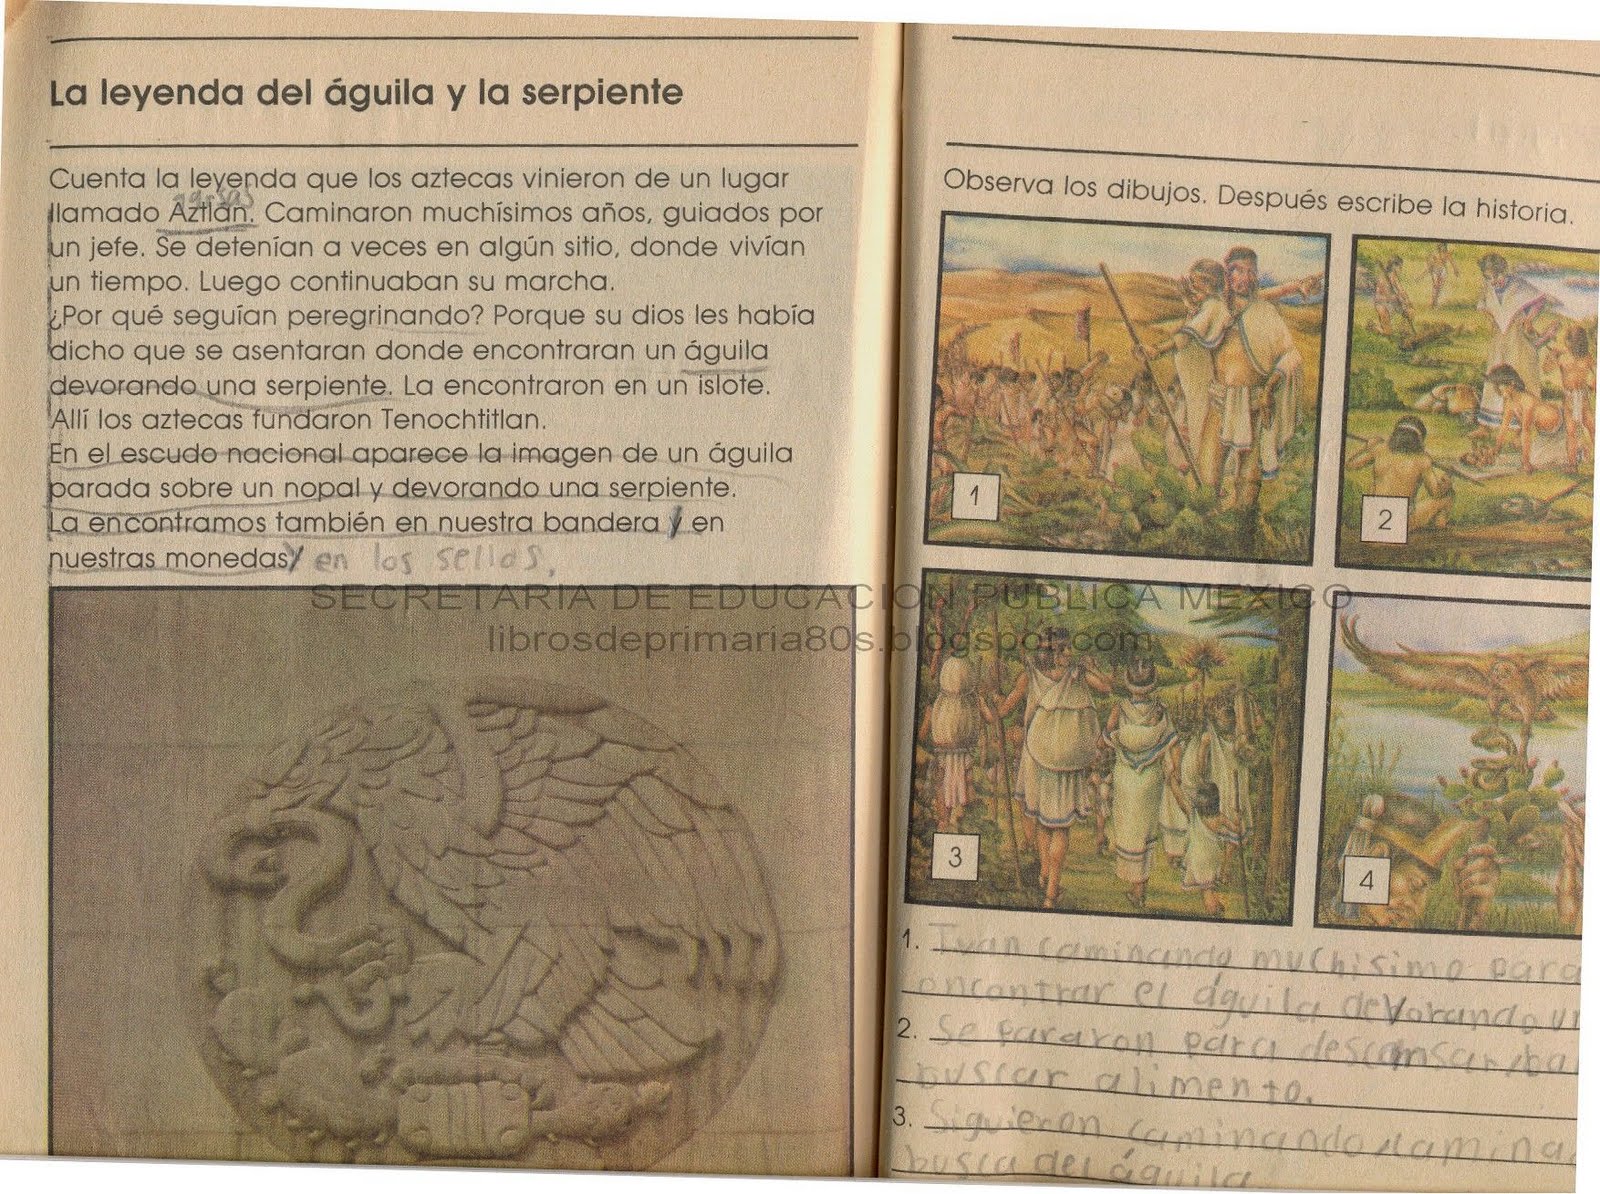 Libros de Primaria de los 80's: La leyenda del águila y la serpiente (Mi  libro de segundo Parte 2)